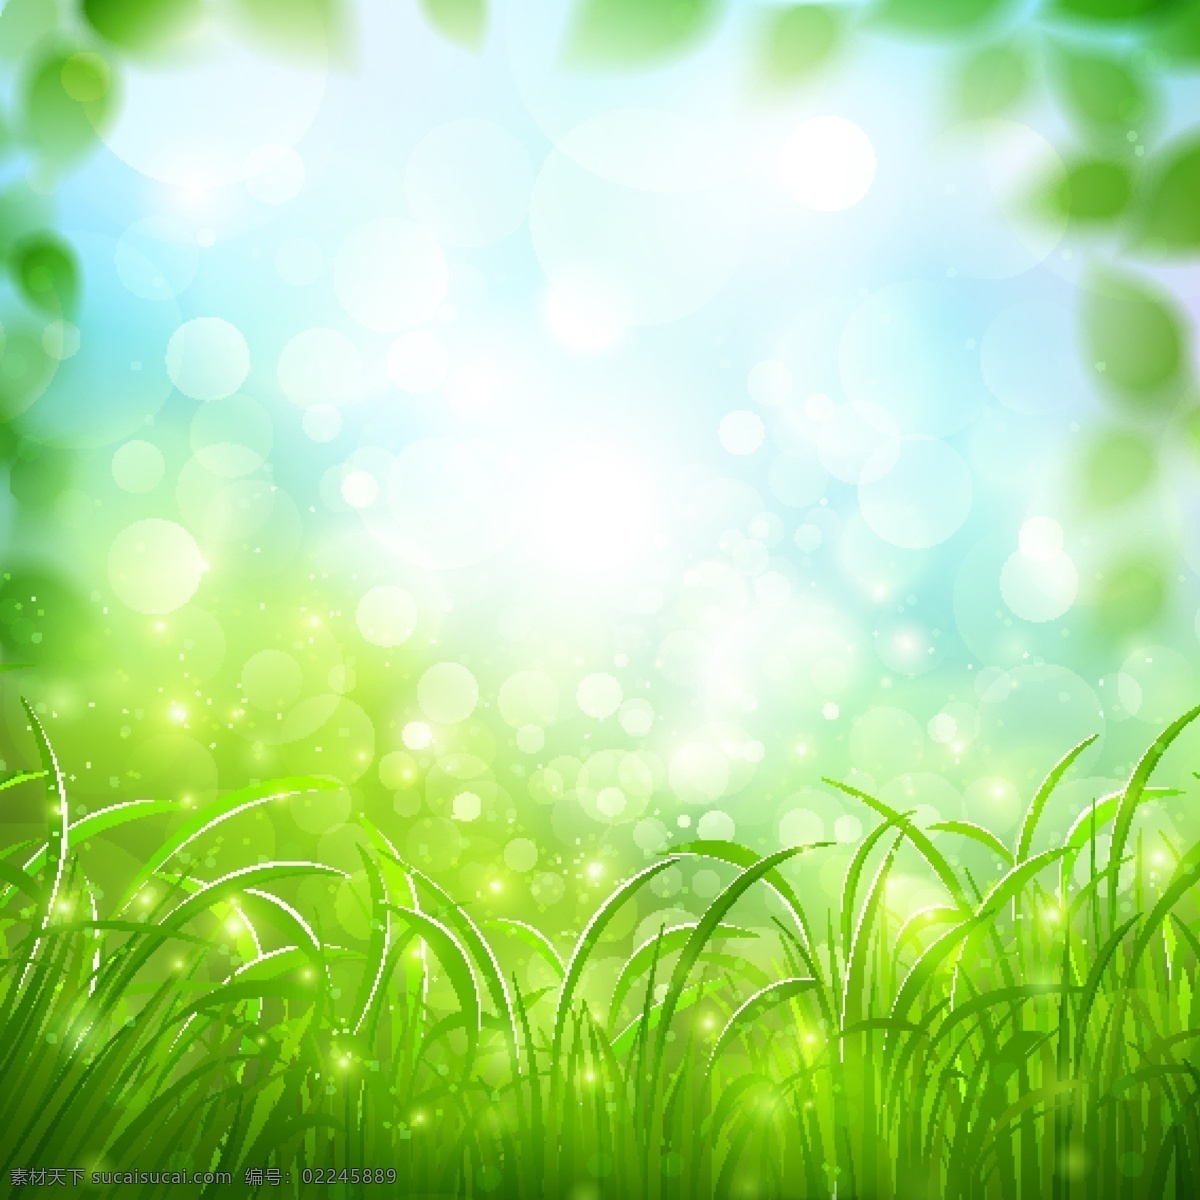 吸入性 背景 矢量 绿 草 背景矢量 光晕 绿色的草 矢量背景 矢量图 花纹花边